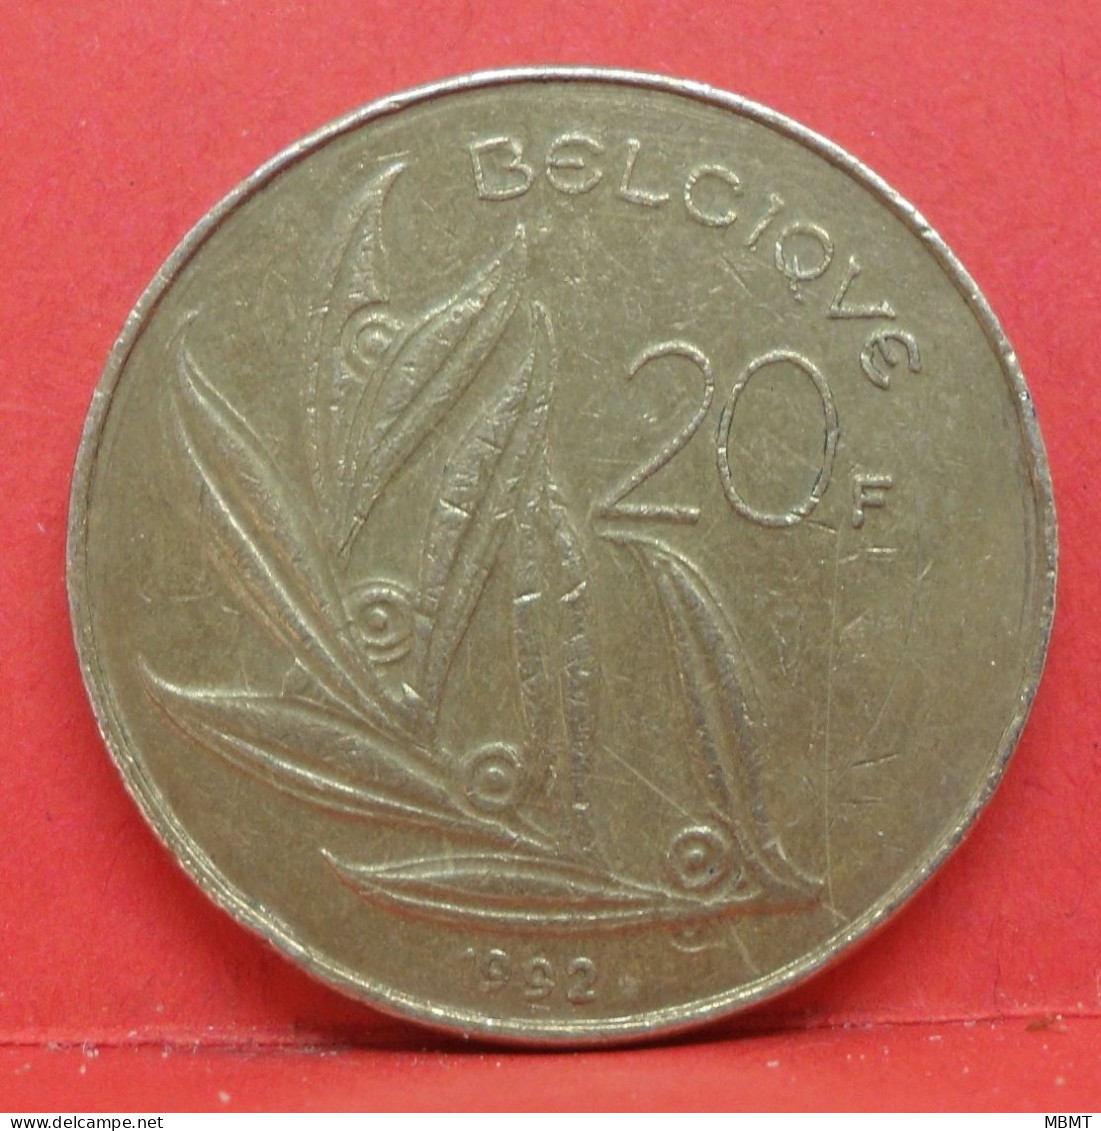 20 Francs 1992 - TB - Pièce Monnaie Belgique - Article N°1847 - 20 Francs